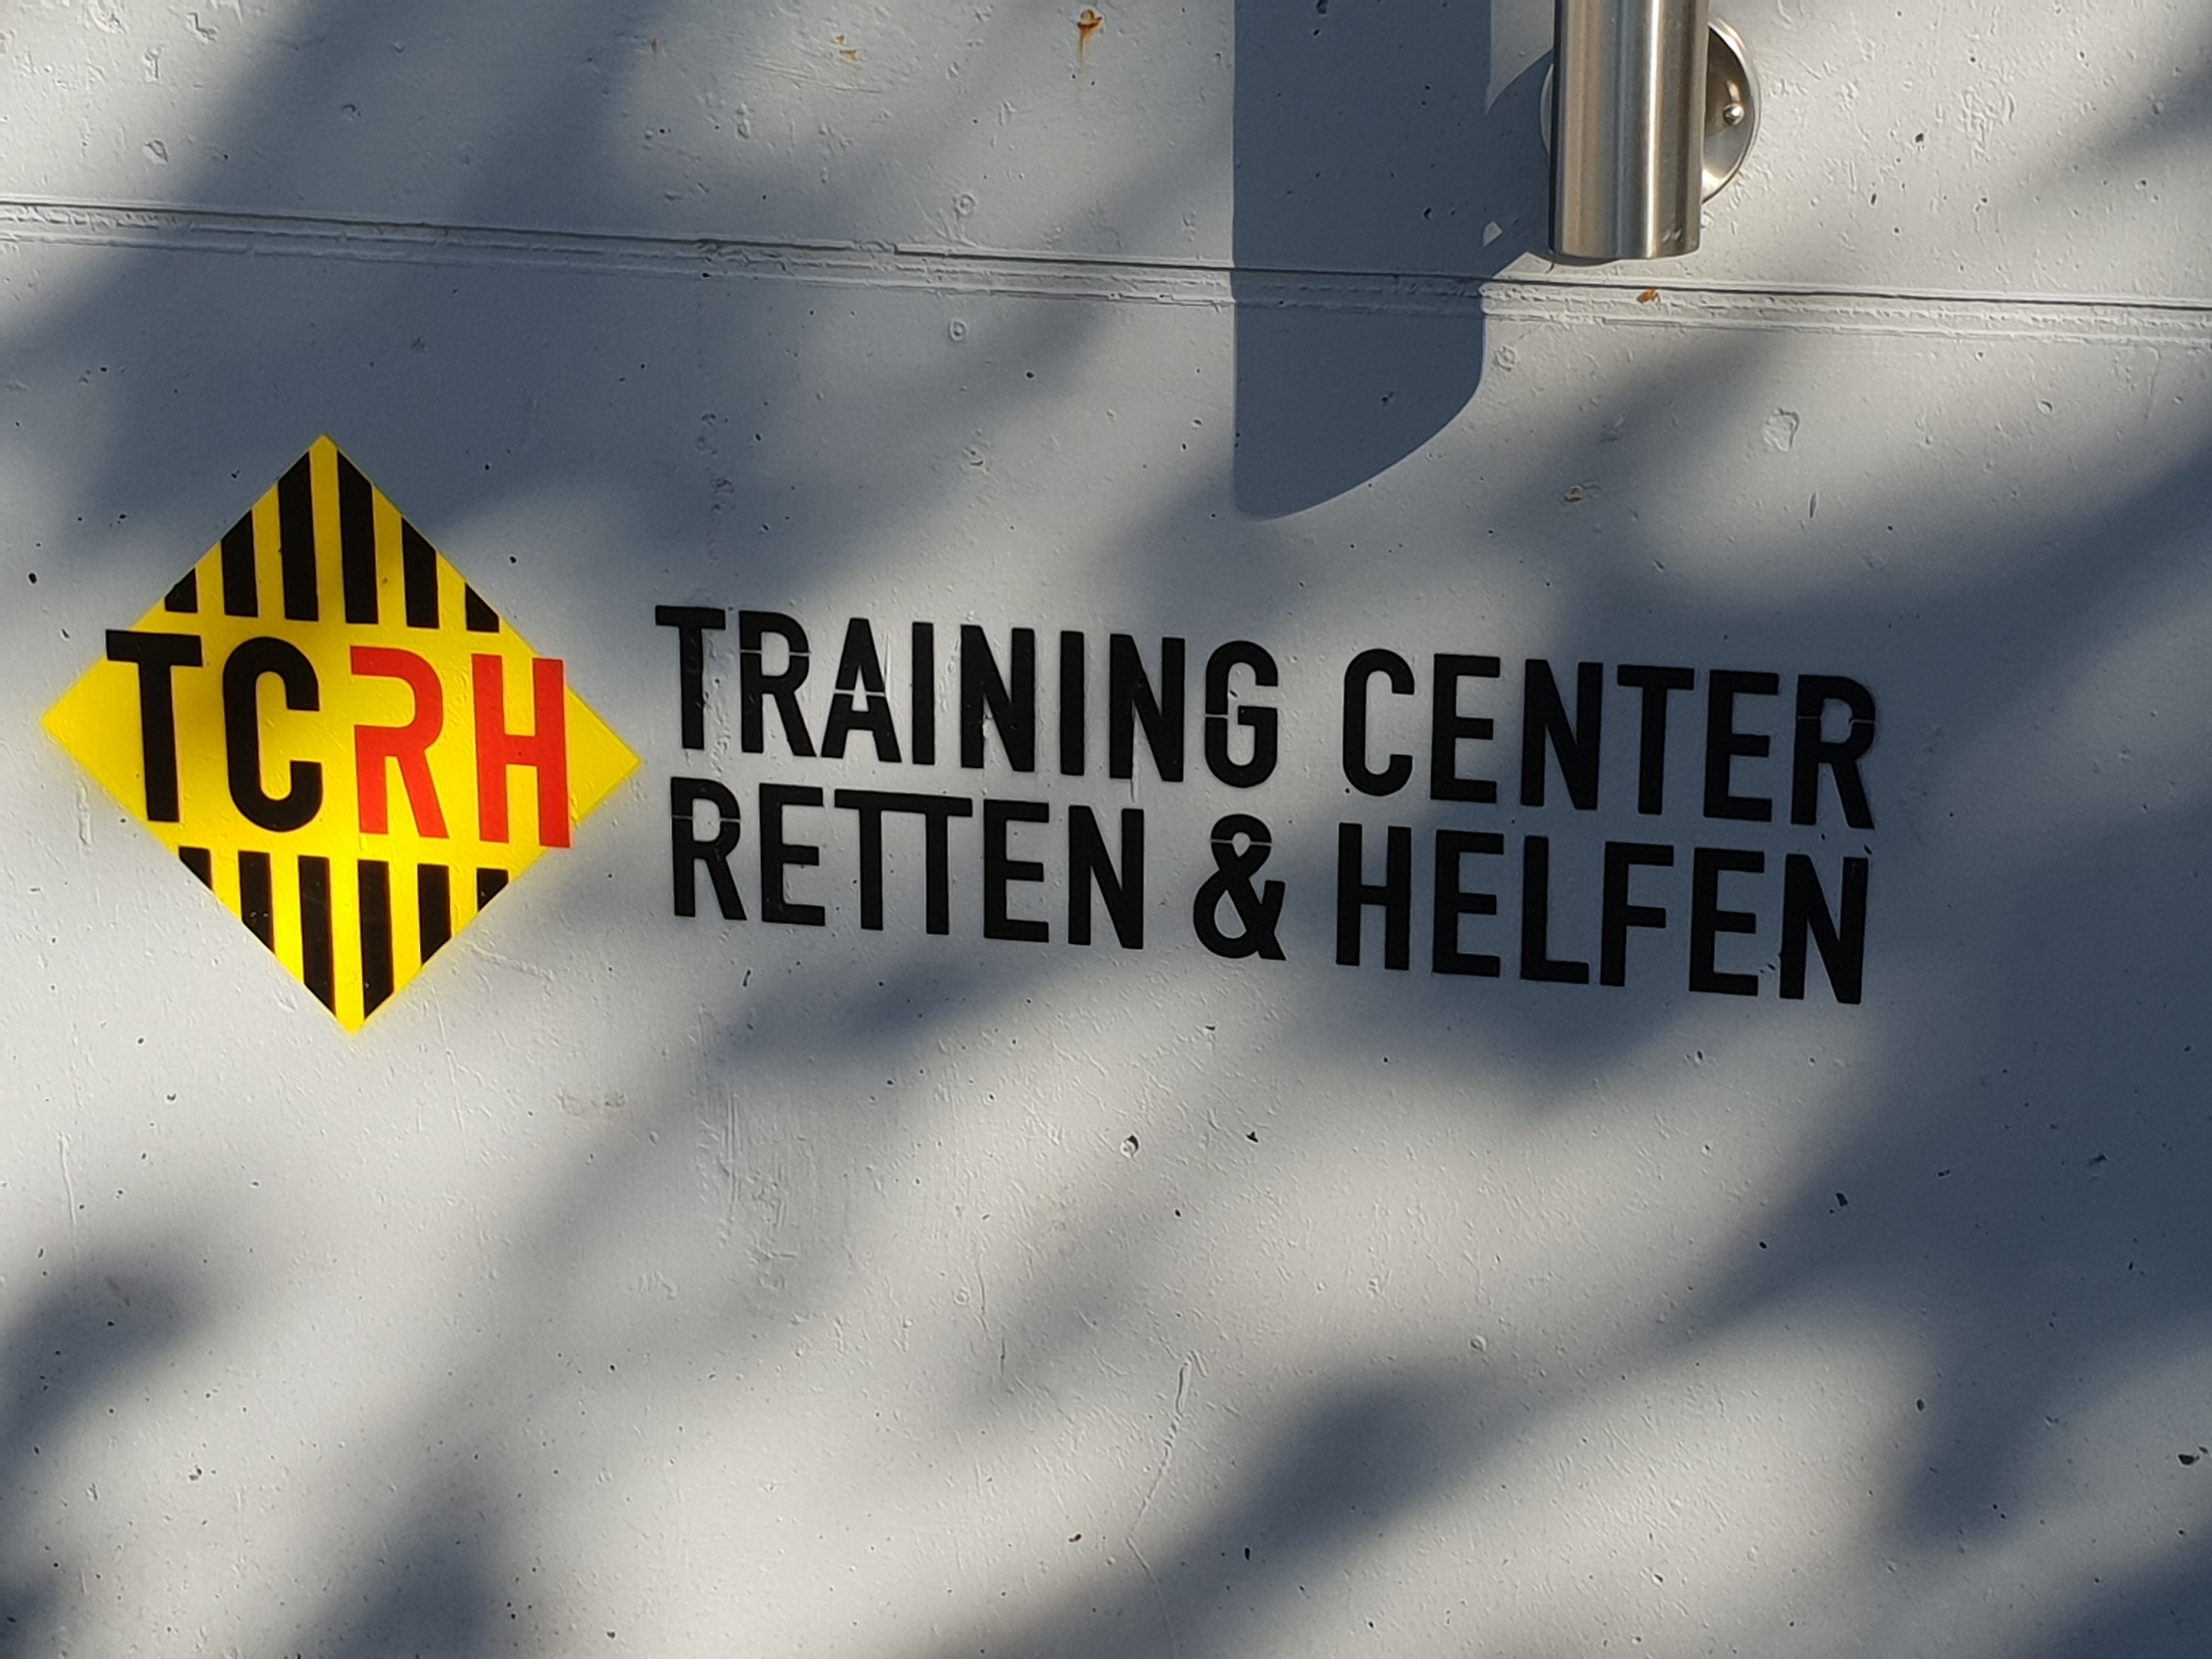 TCRH Training Center Retten und Helfen